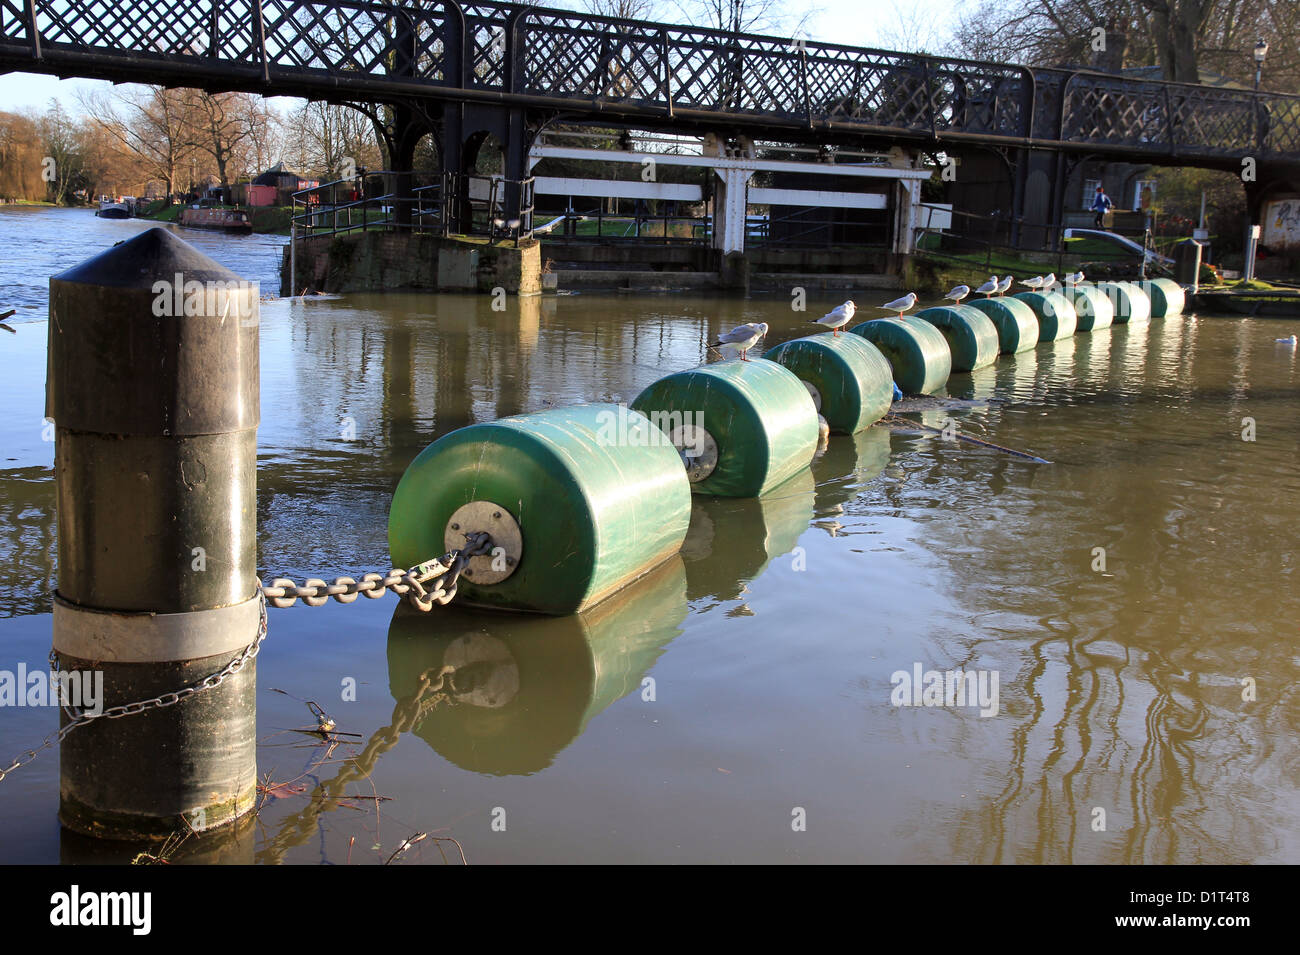 Jésus Lock passerelle avec barrières de sécurité attachés sur les bouées Rivière Cam, Cambridge, Angleterre, Royaume-Uni. Banque D'Images